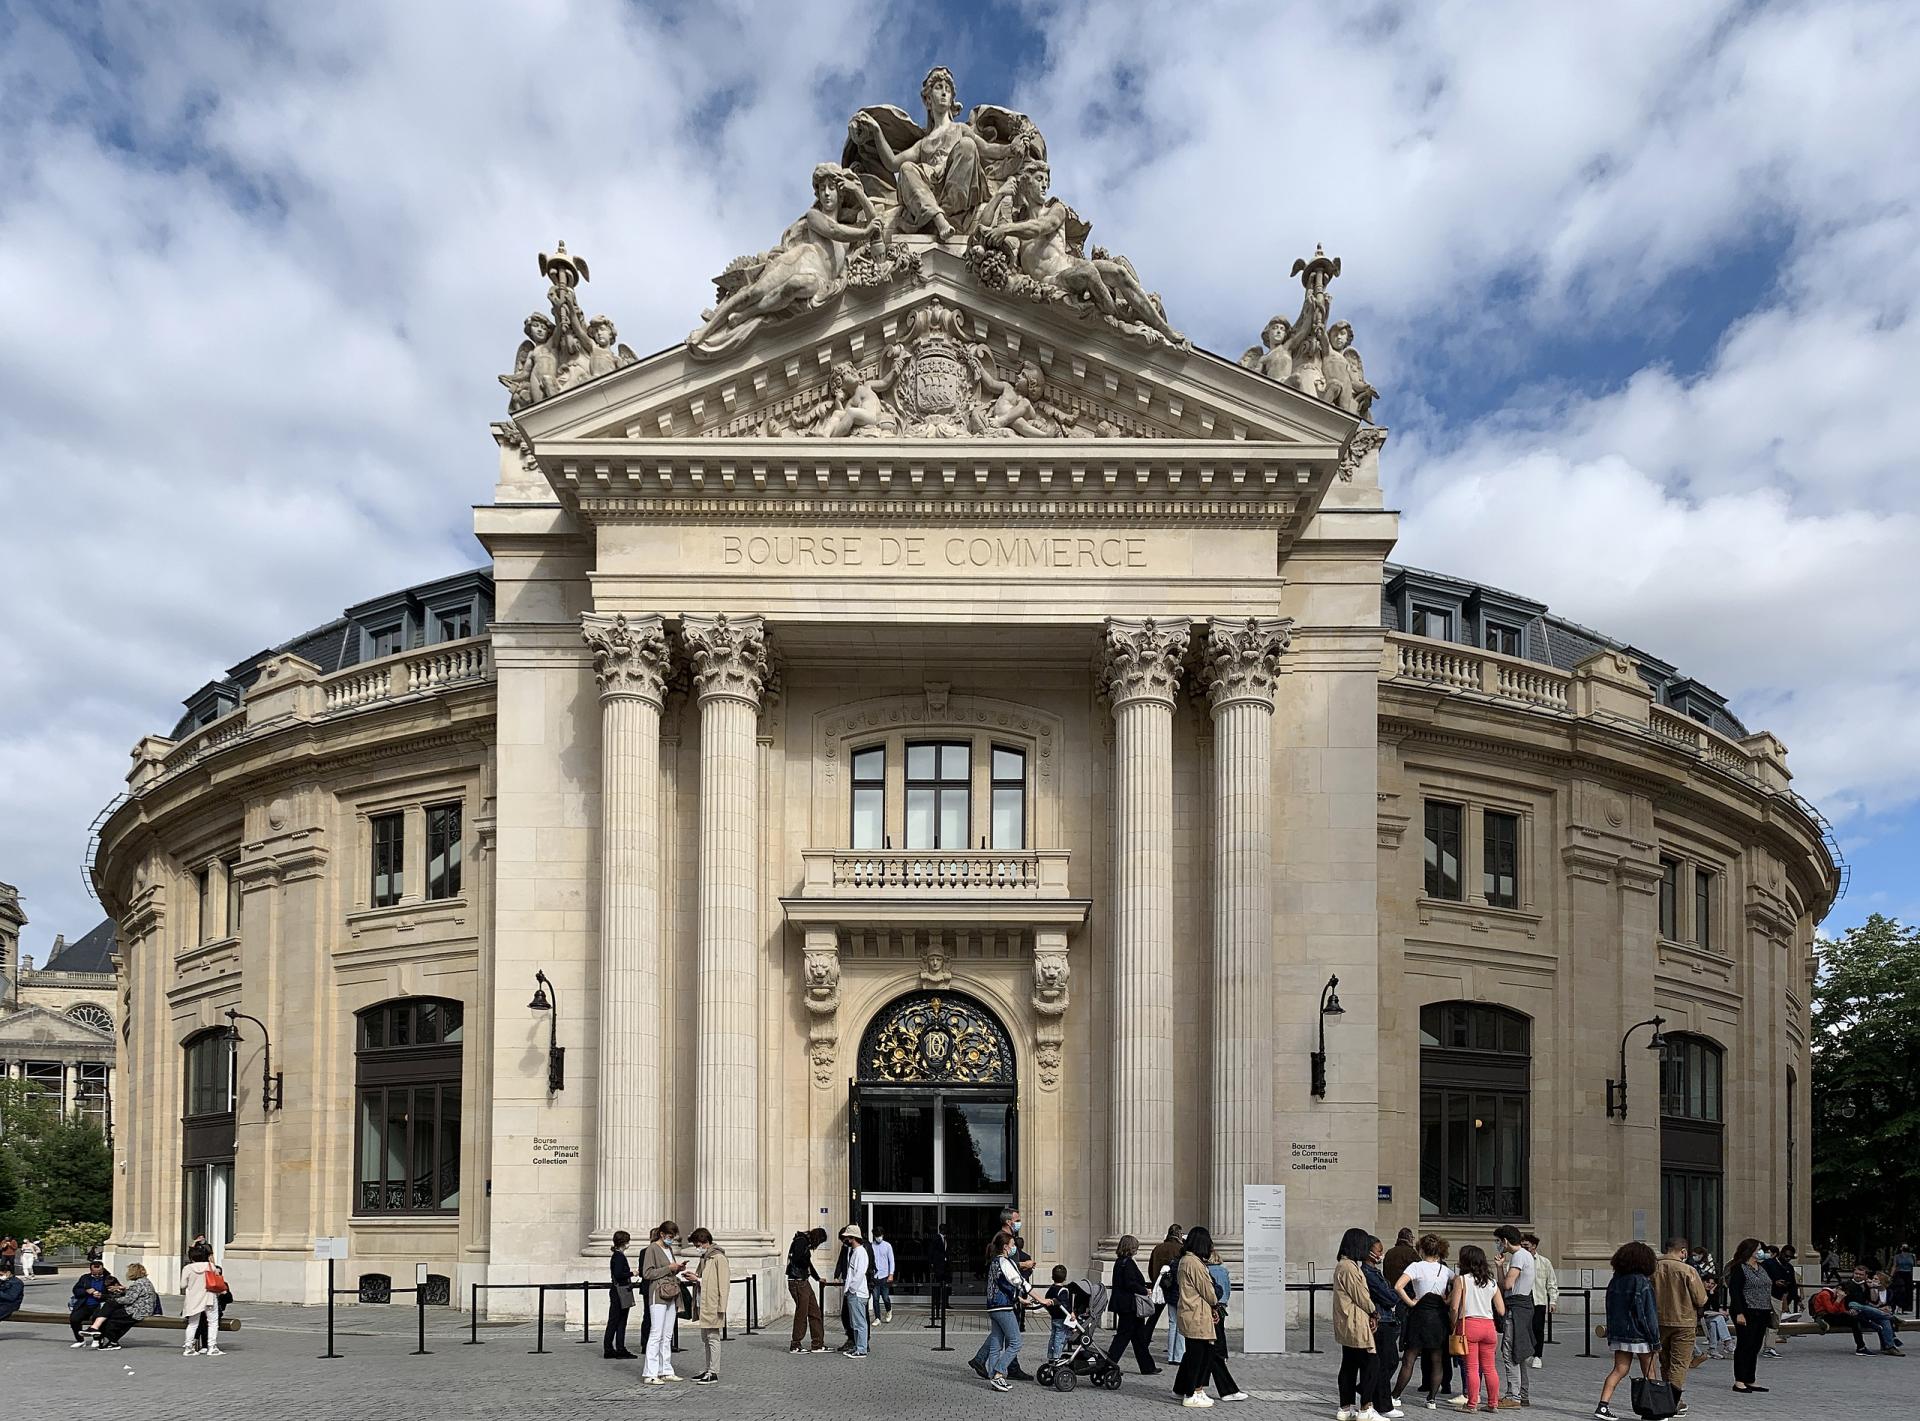 Contemporary art has a new exhibition space: the Bourse du Commerce - François Pinault